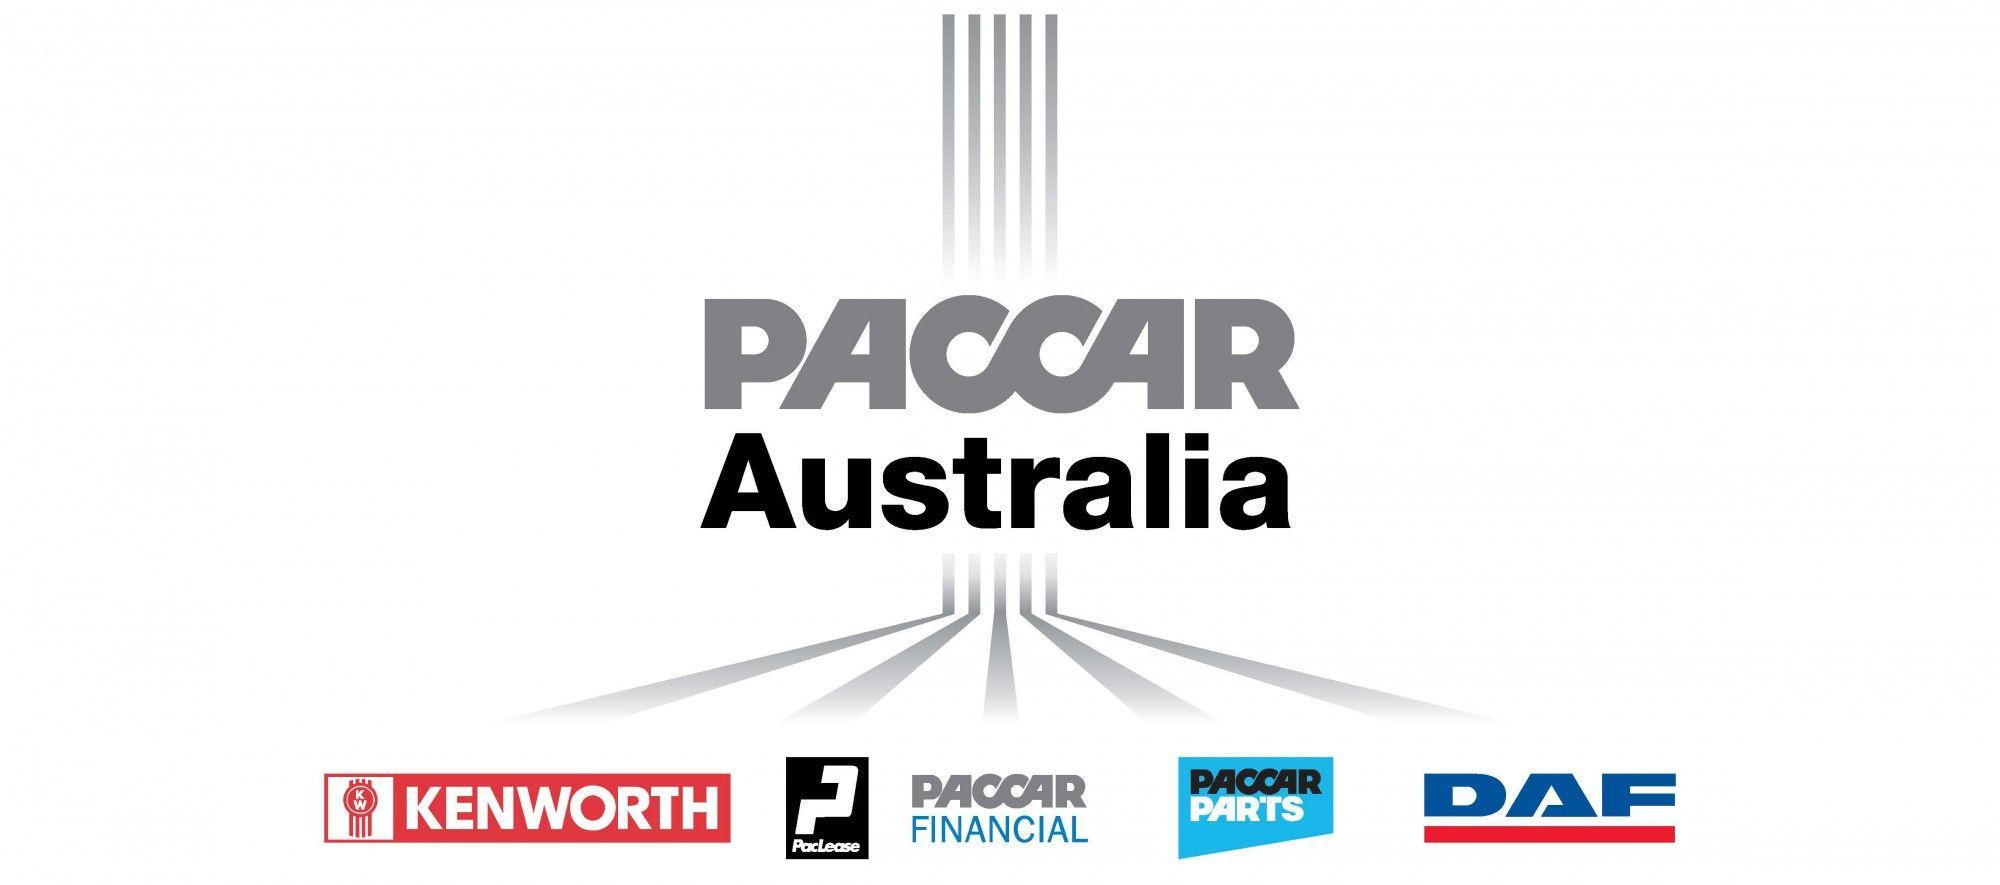 Financail PACCAR Logo - PACCAR AUSTRALIA. PACCAR Australia is a subsidiary of PACCAR Inc